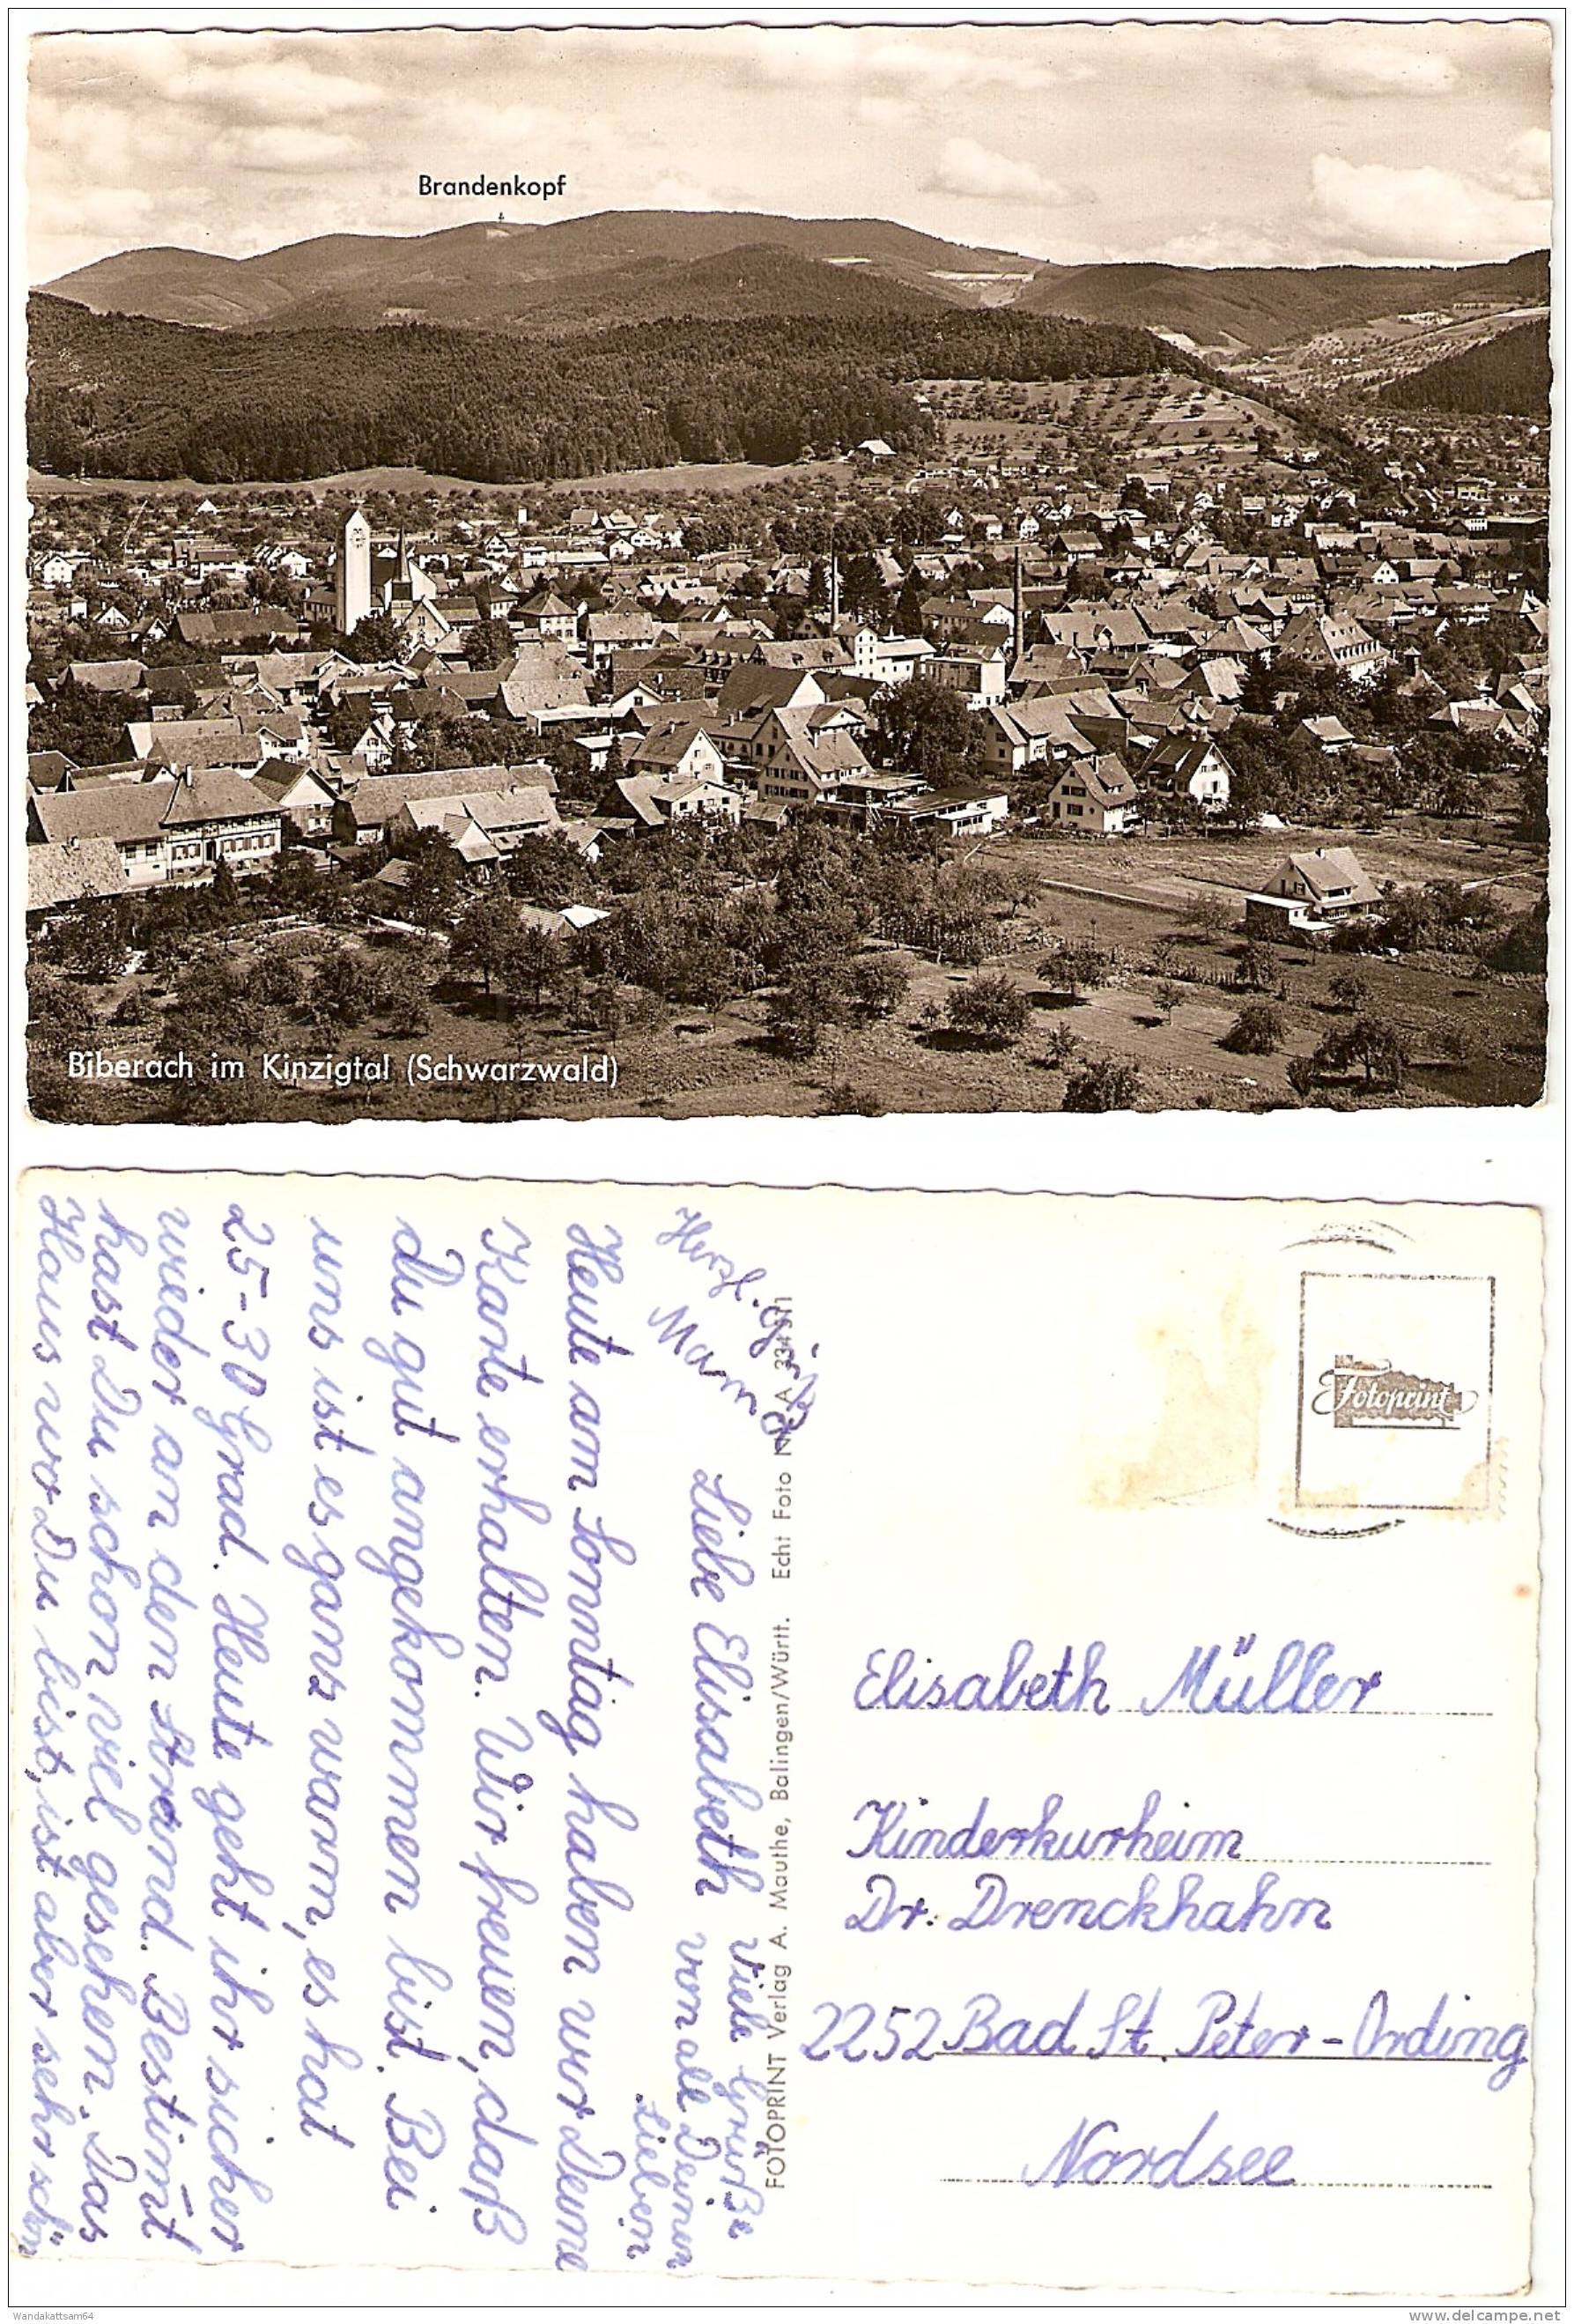 AK 334311 Biberach Im Kinzigtal (Schwarzwald) Mit Brandenkopf Totale Ort Und Datum Nicht Erkennbar Briefmarke Entfernt N - Biberach